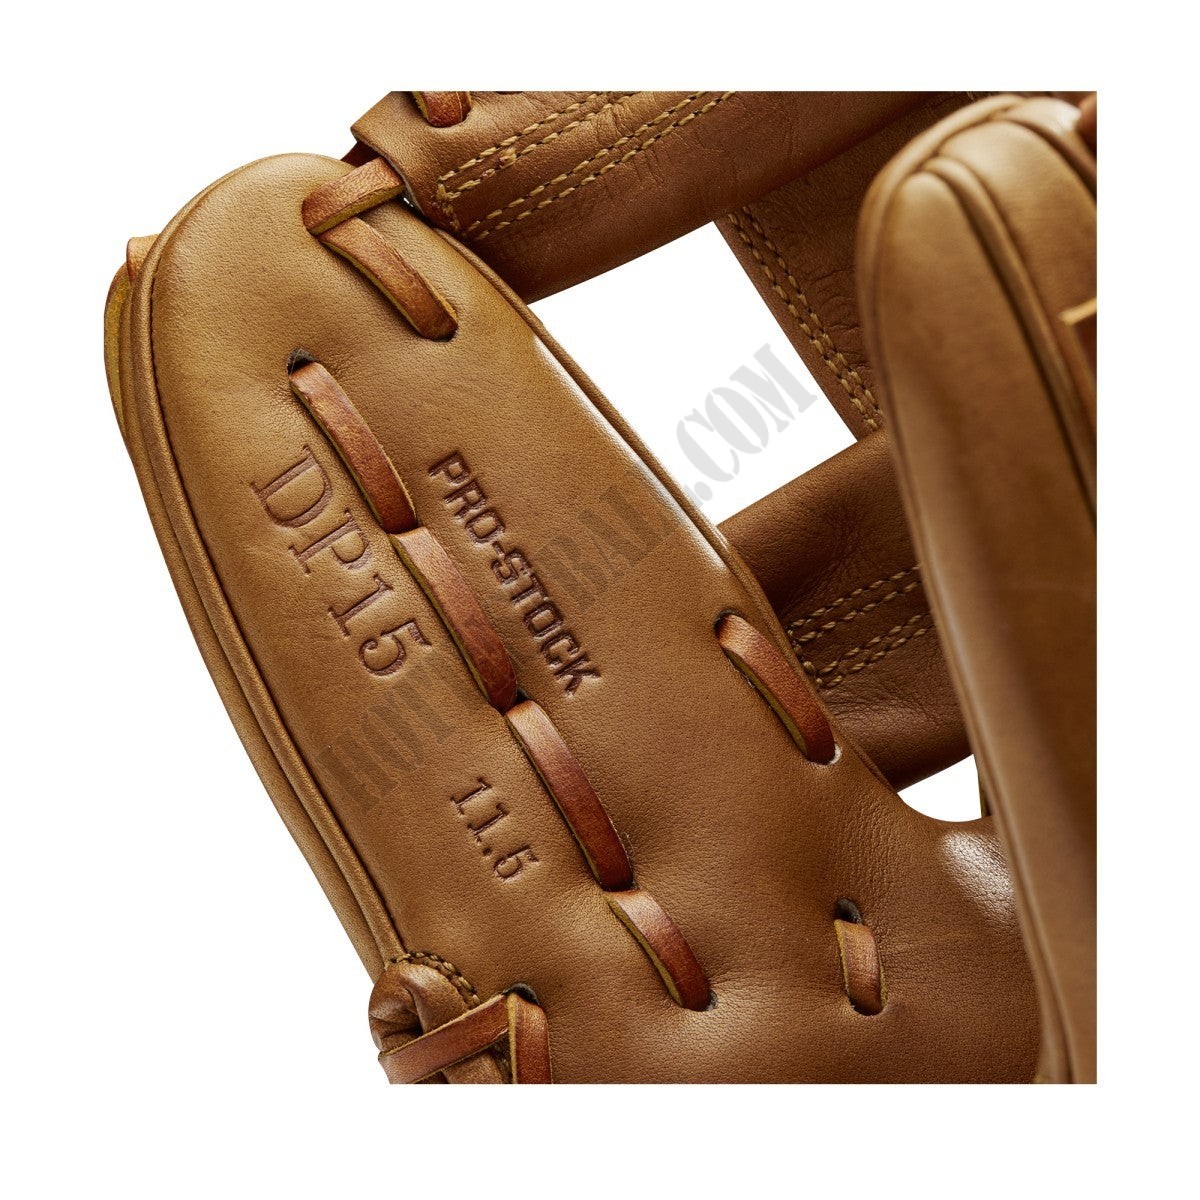 2021 A2000 DP15 11.5" Infield Baseball Glove ● Wilson Promotions - -7